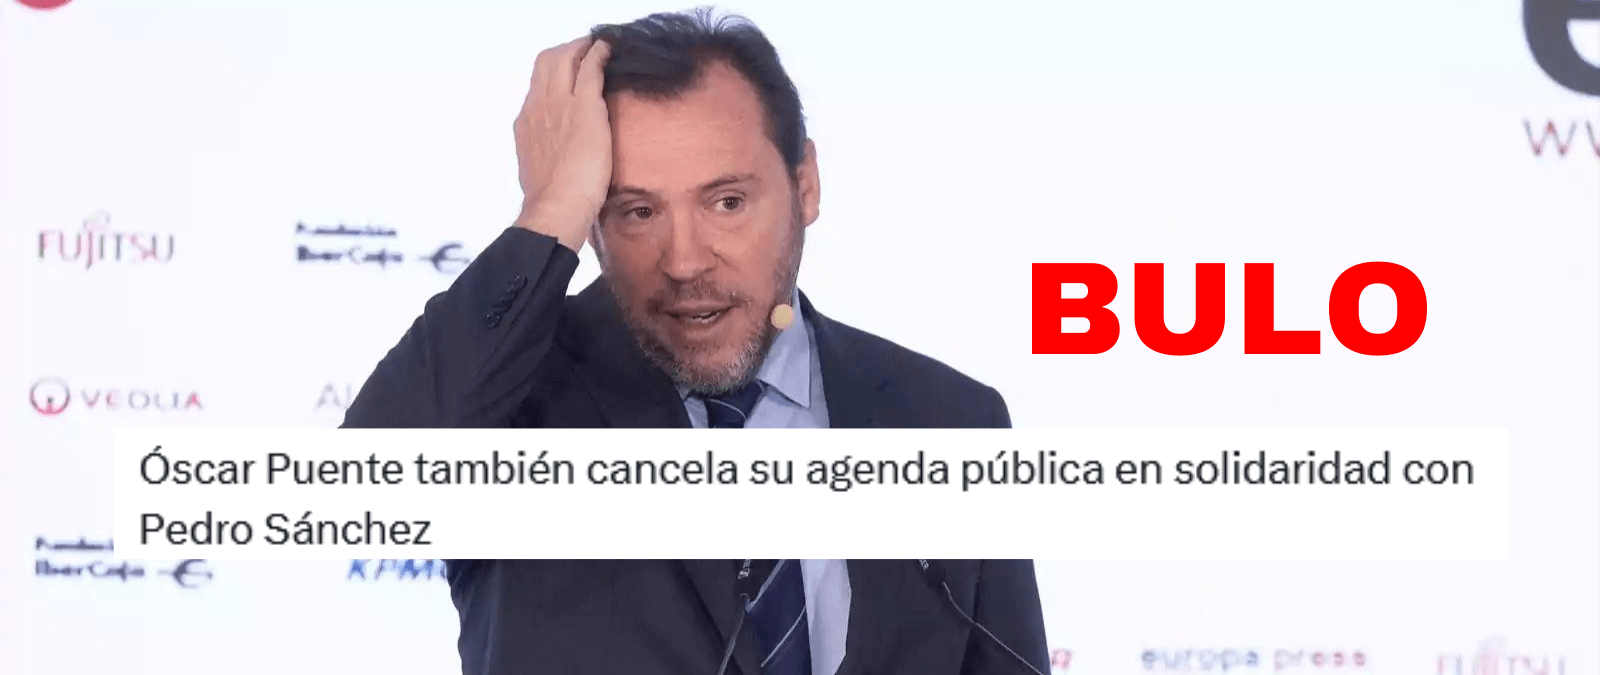 No, el ministro Óscar Puente no ha cancelado su agenda pública “en solidaridad con Pedro Sánchez” a 26 de abril